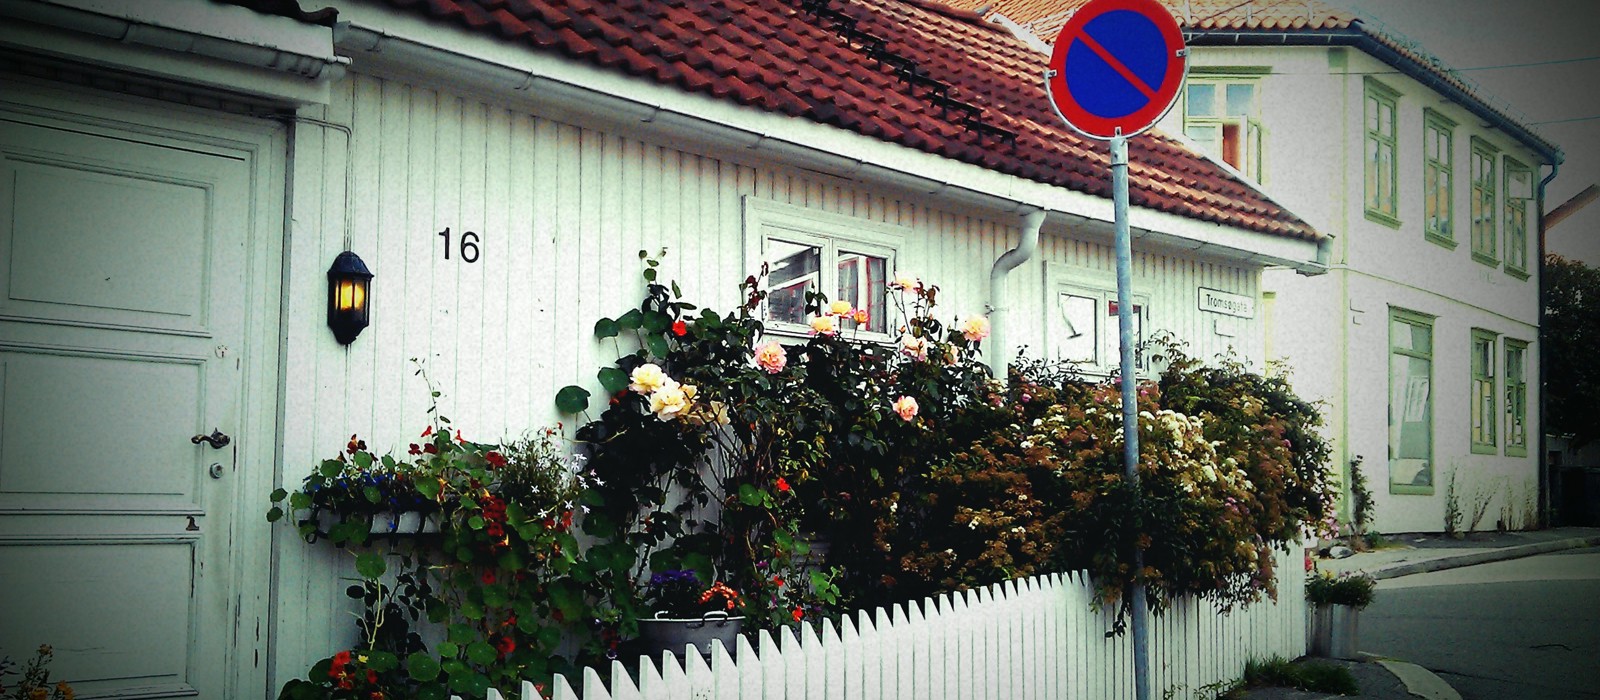 Små hus og små hager - stor idyll. Foto: Hilde Fossum Sundre